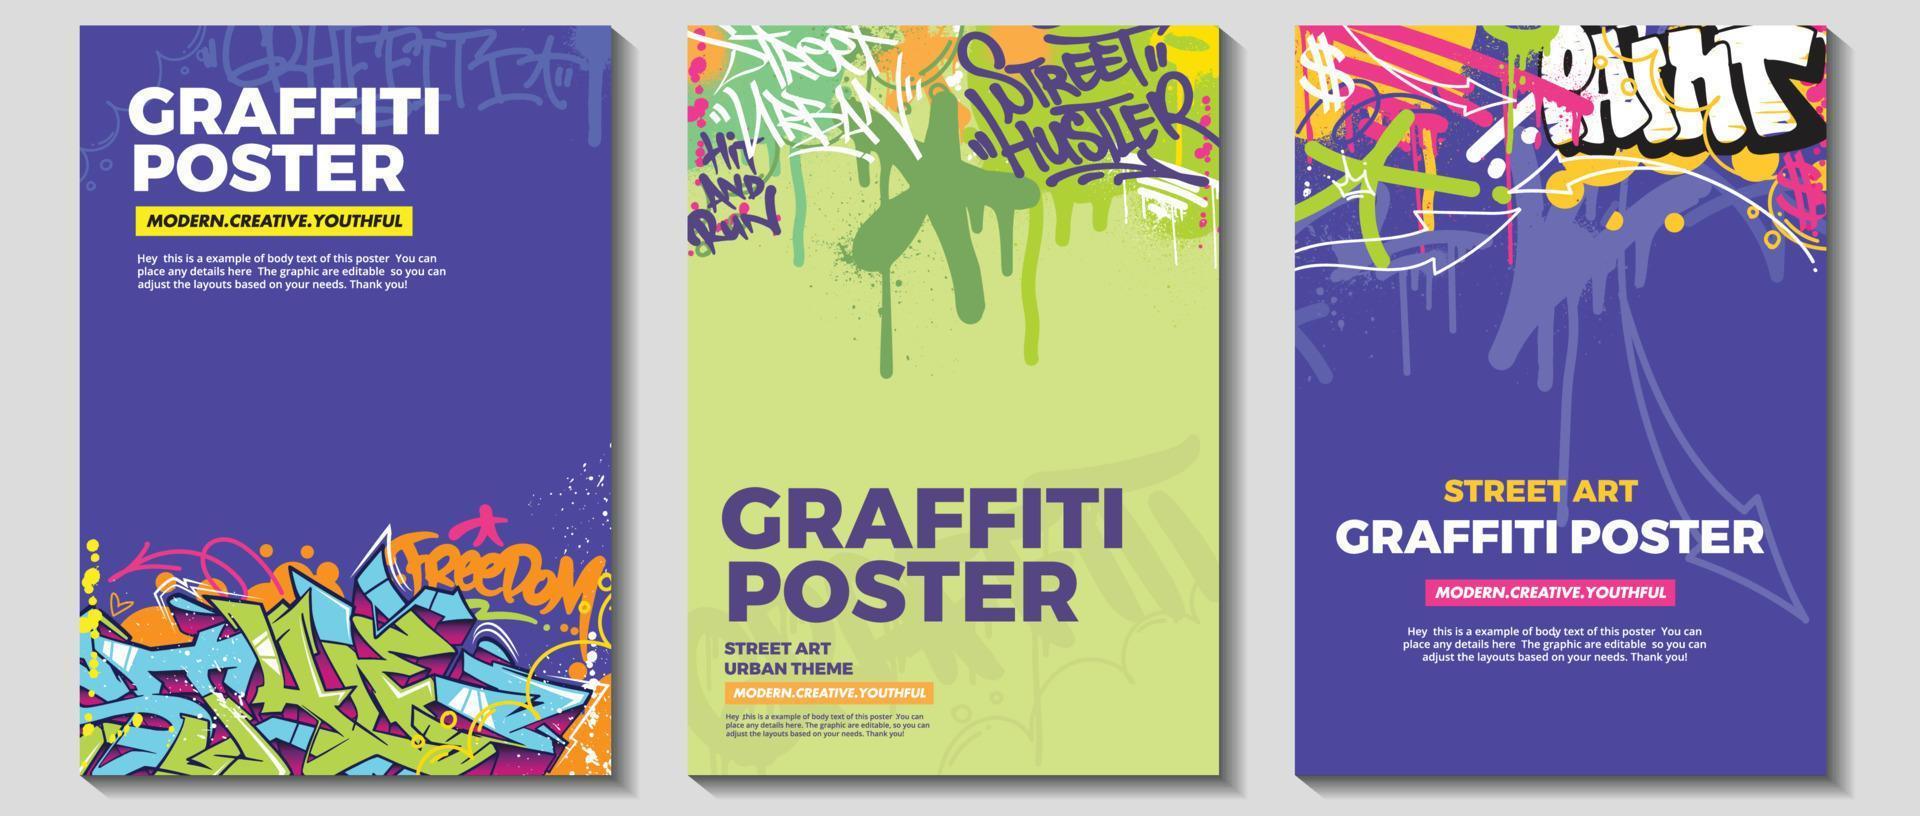 cartaz de arte de graffiti moderno ou design de folheto com etiquetas coloridas, vomitar. vetor de ilustração de grafite abstrato desenhado à mão em tema de arte de rua